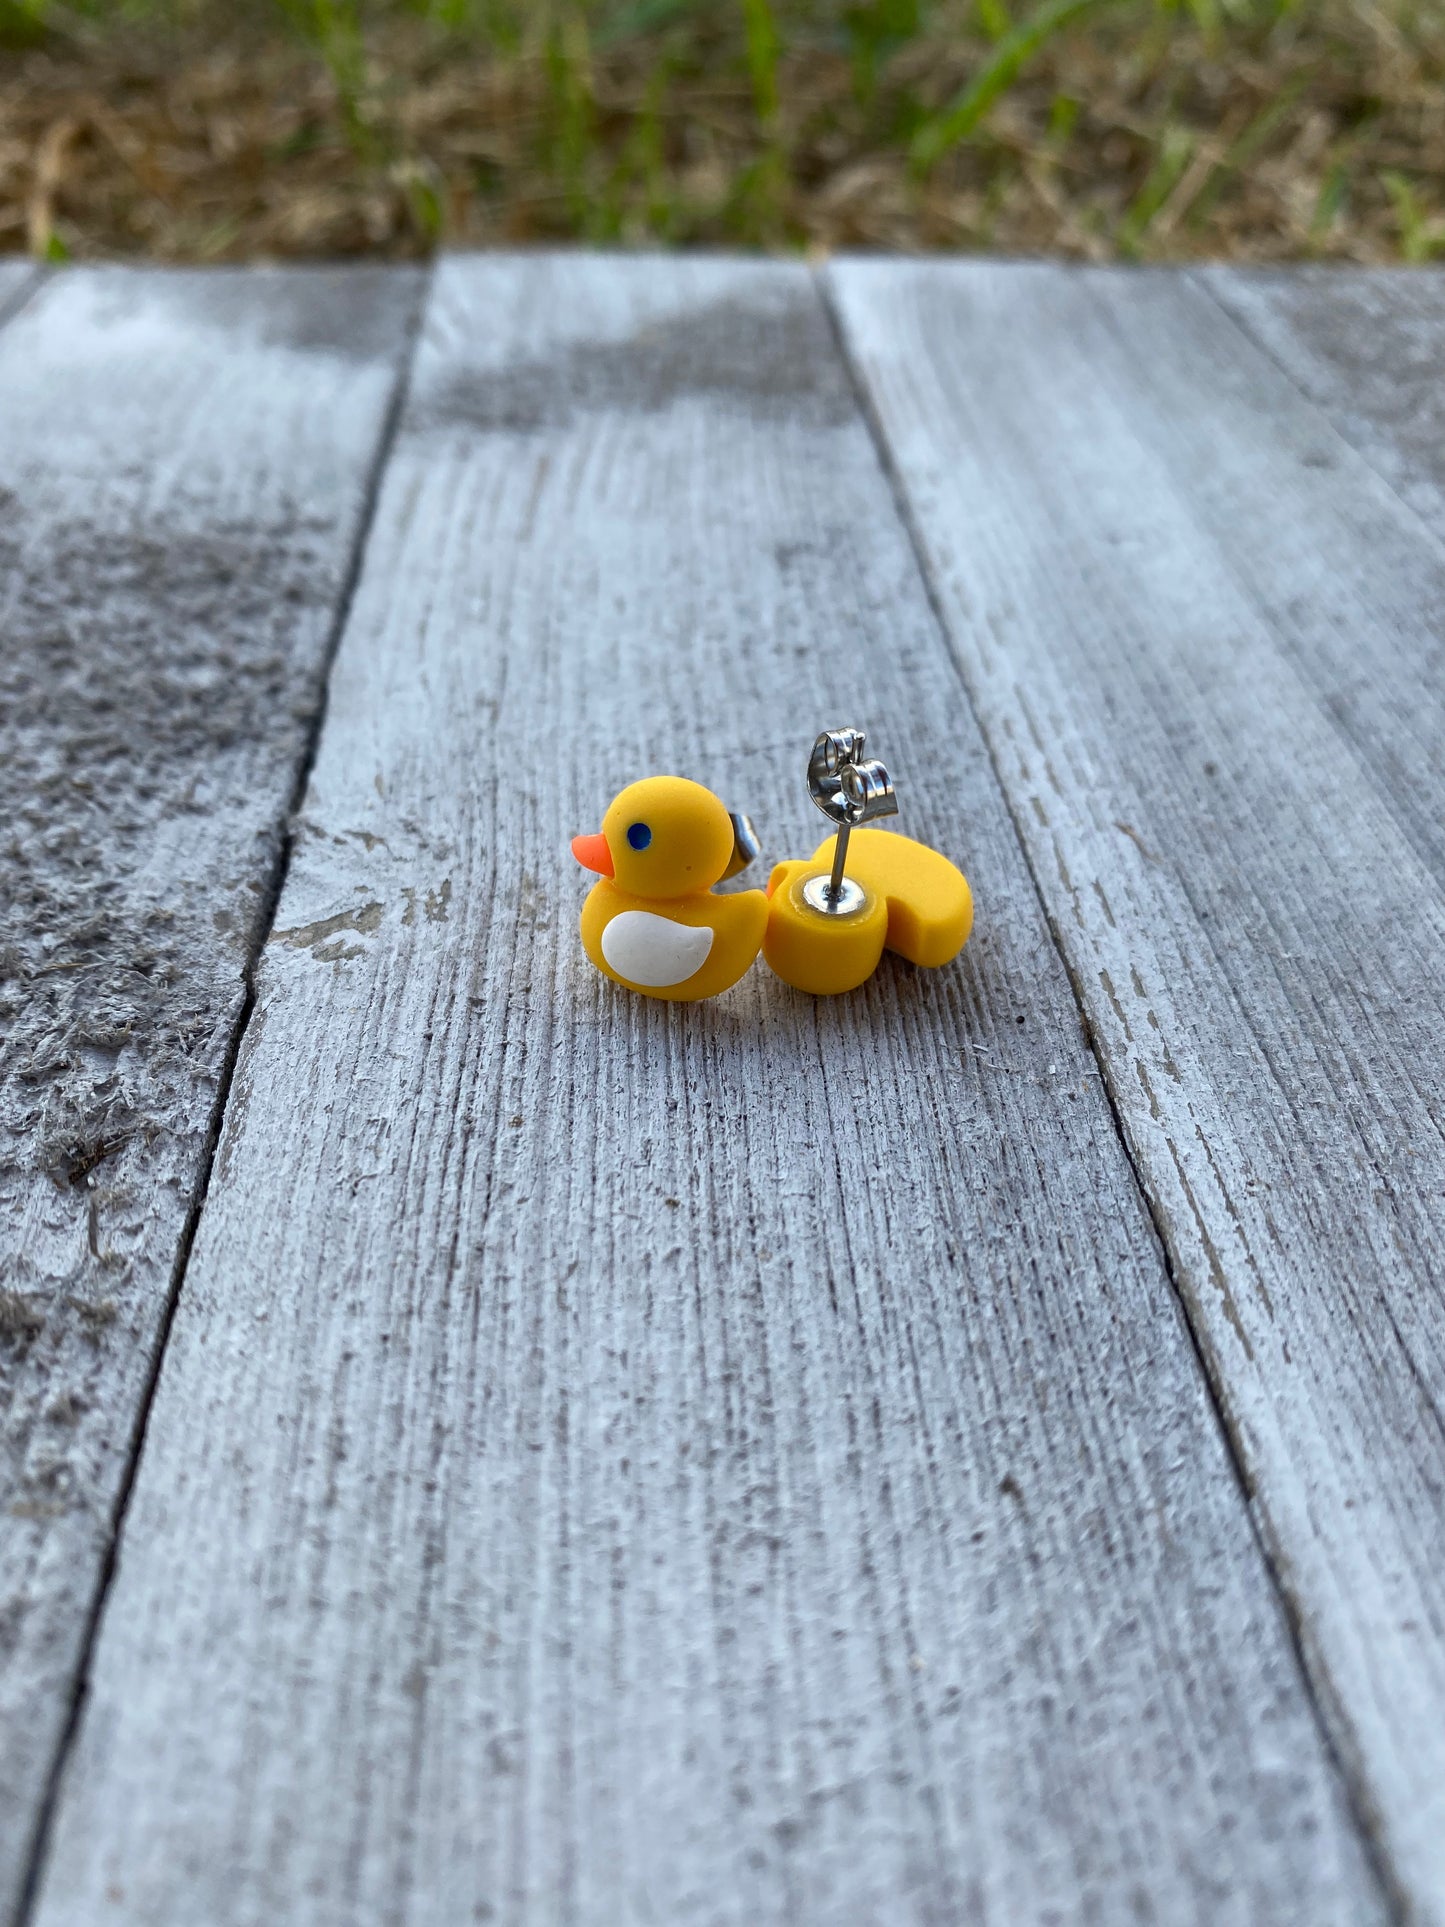 Rubber Ducky Duck Farm Animal Stud Earrings Gift